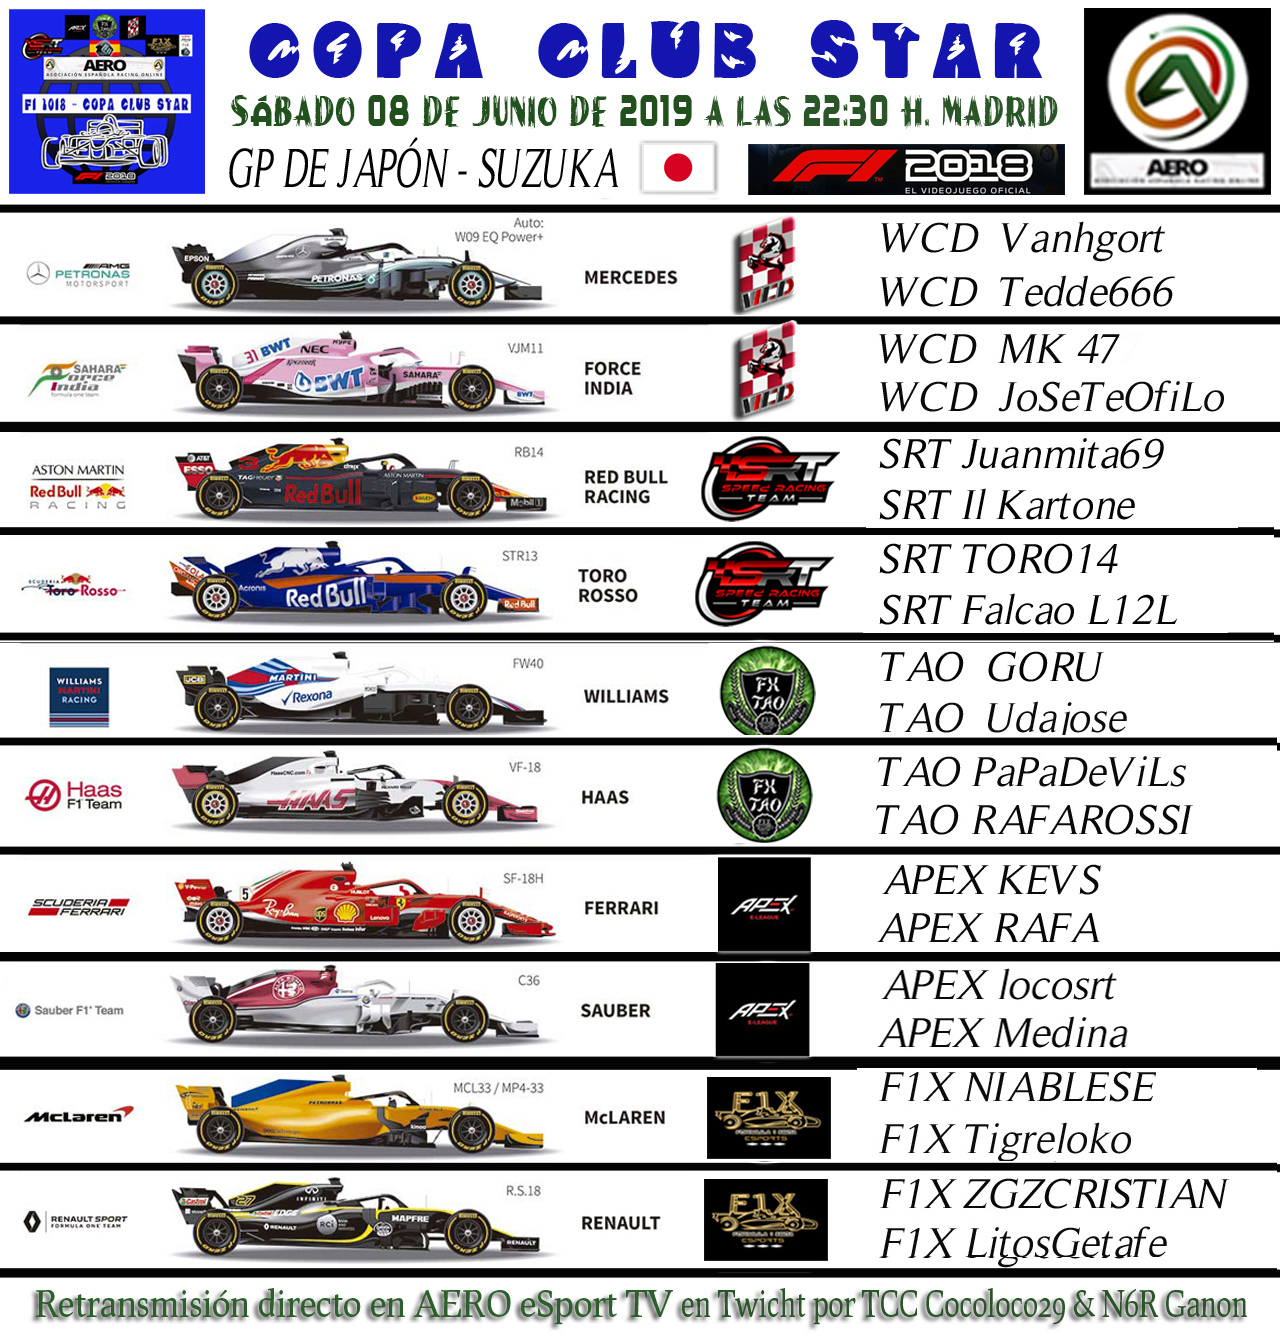 F1 2018 - XBOX ONE * COPA CLUB STAR * AERO / SRT / F1X * RESULTADOS RACE 4 GP DE JAPÓN -SUZUKA 08-06-2019. Nueva_15